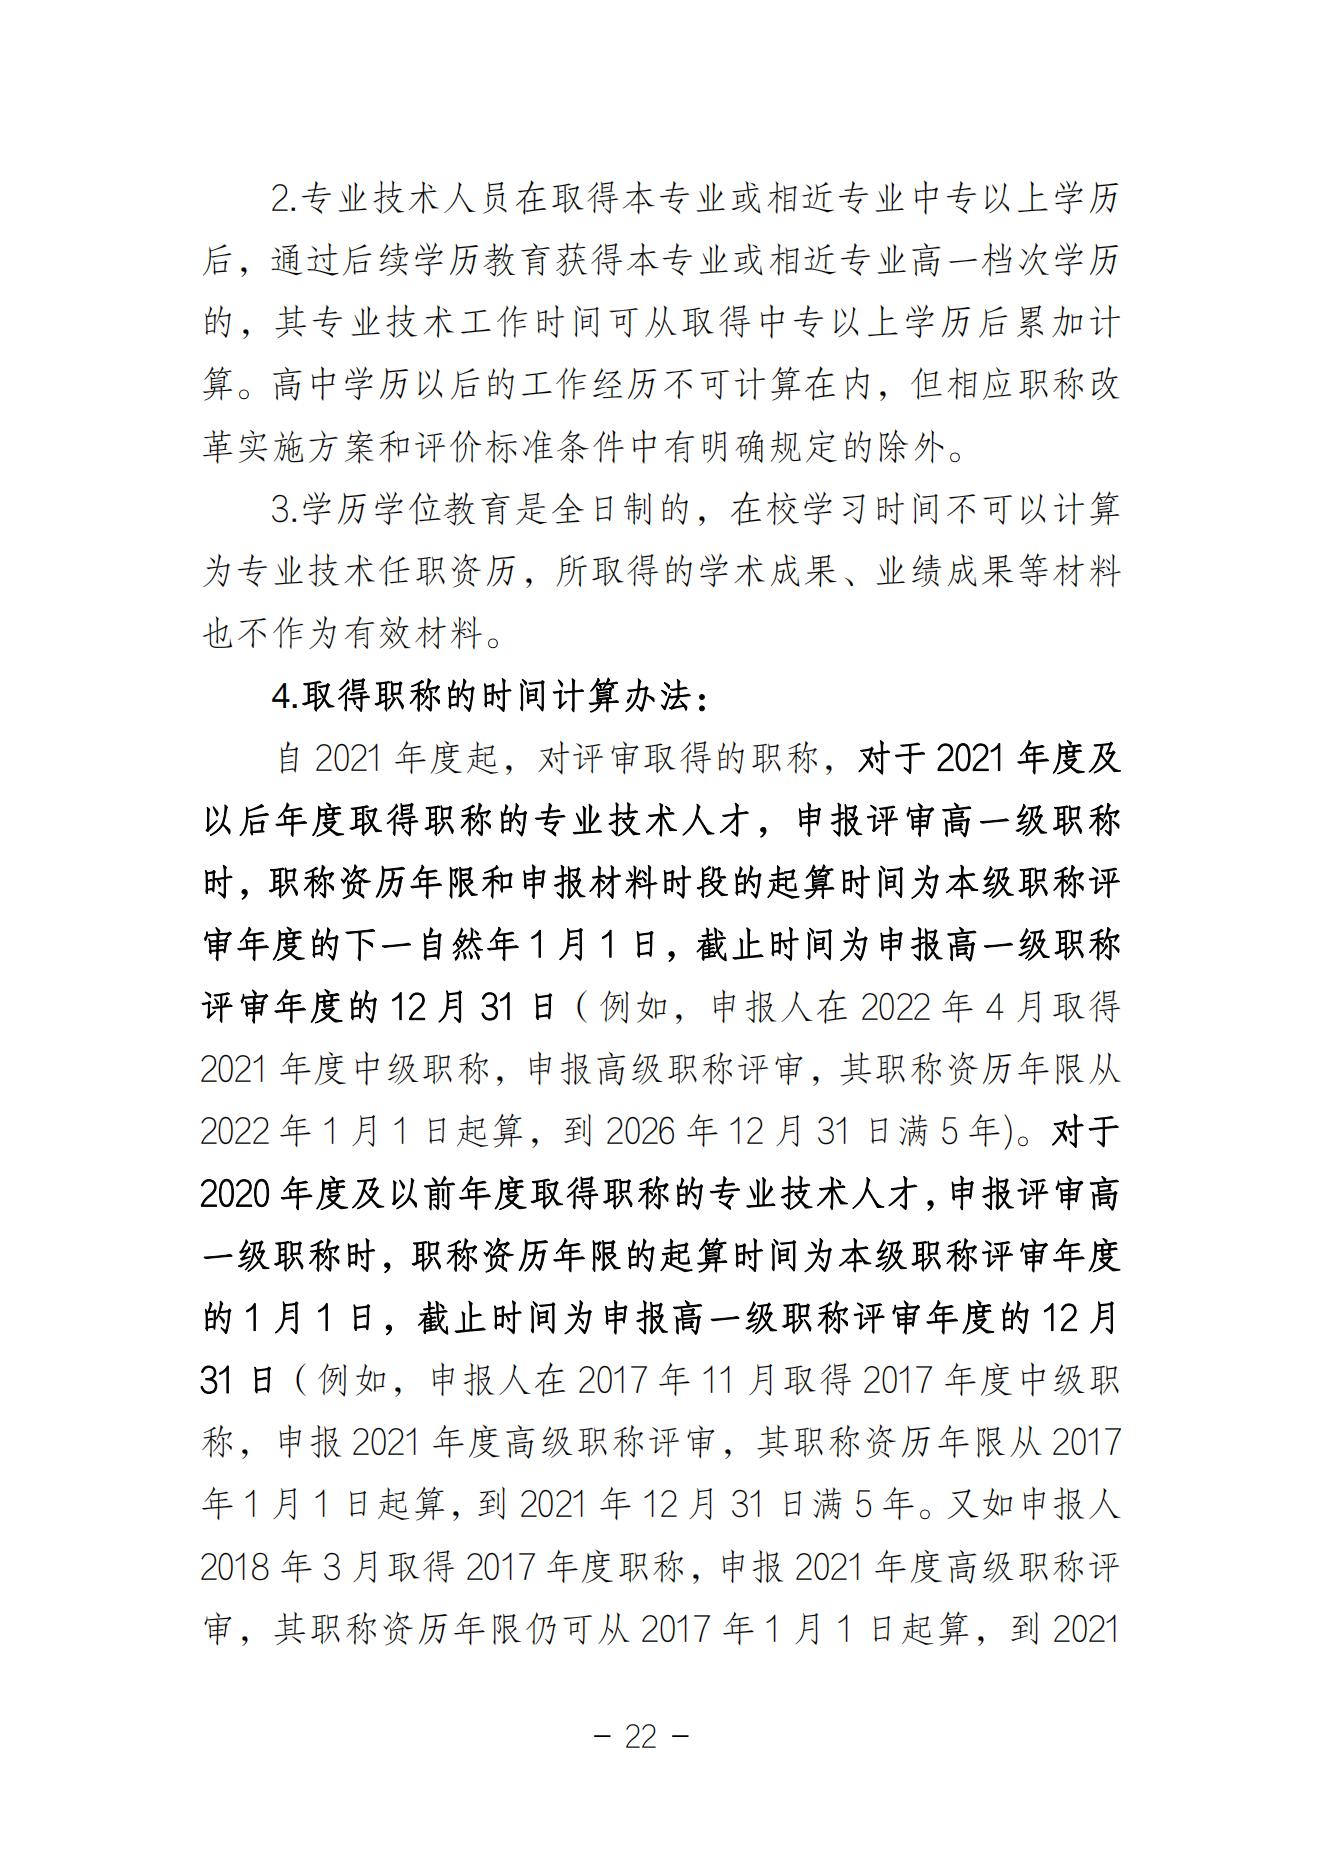 附件3、深圳市职称评审申报指南（2023年度）_21.jpg